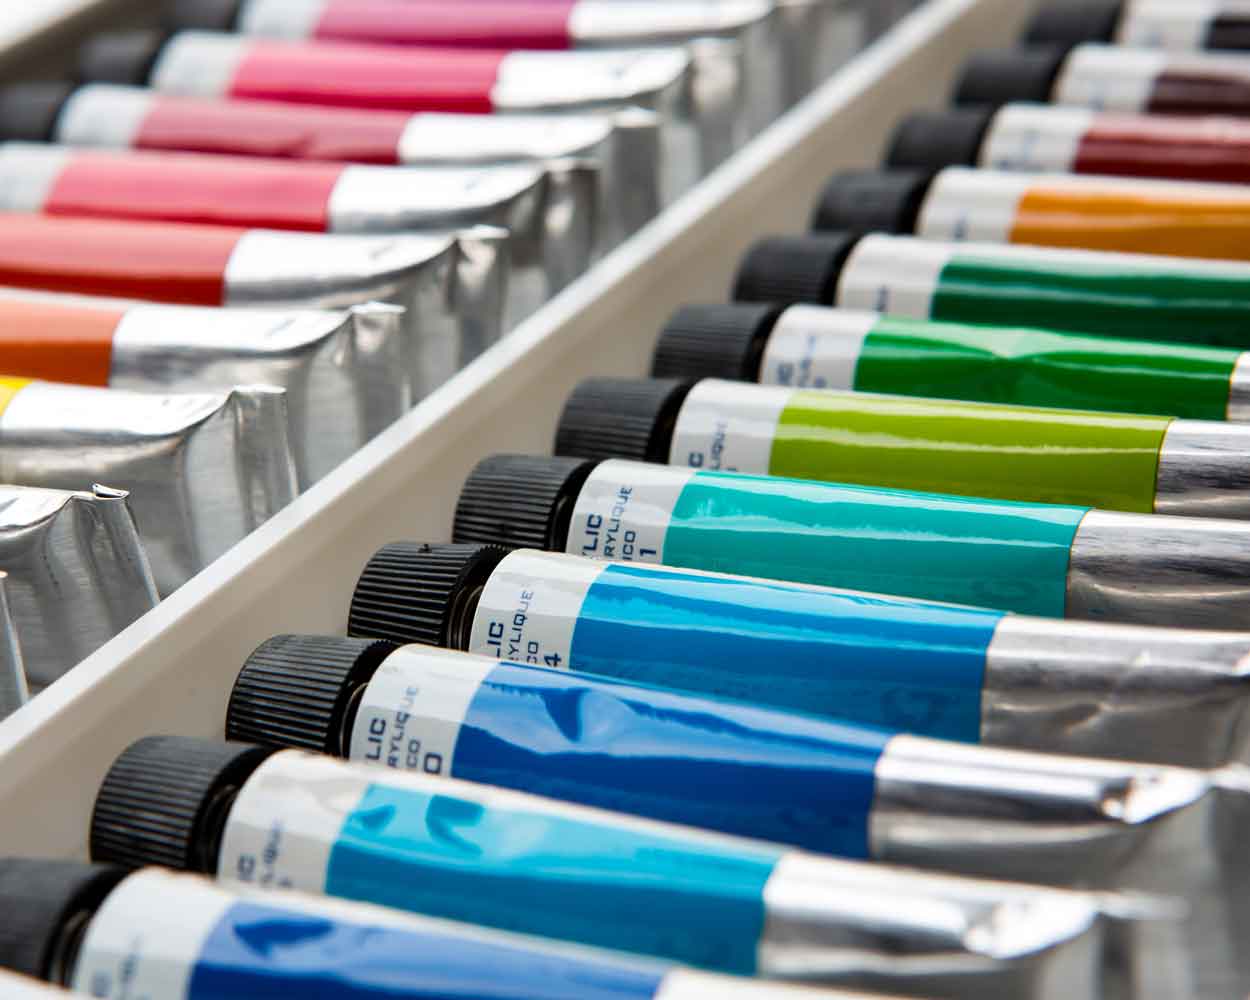 Fabric Colours DIY Paint, Rich Pigment, Non-Craking Paint for